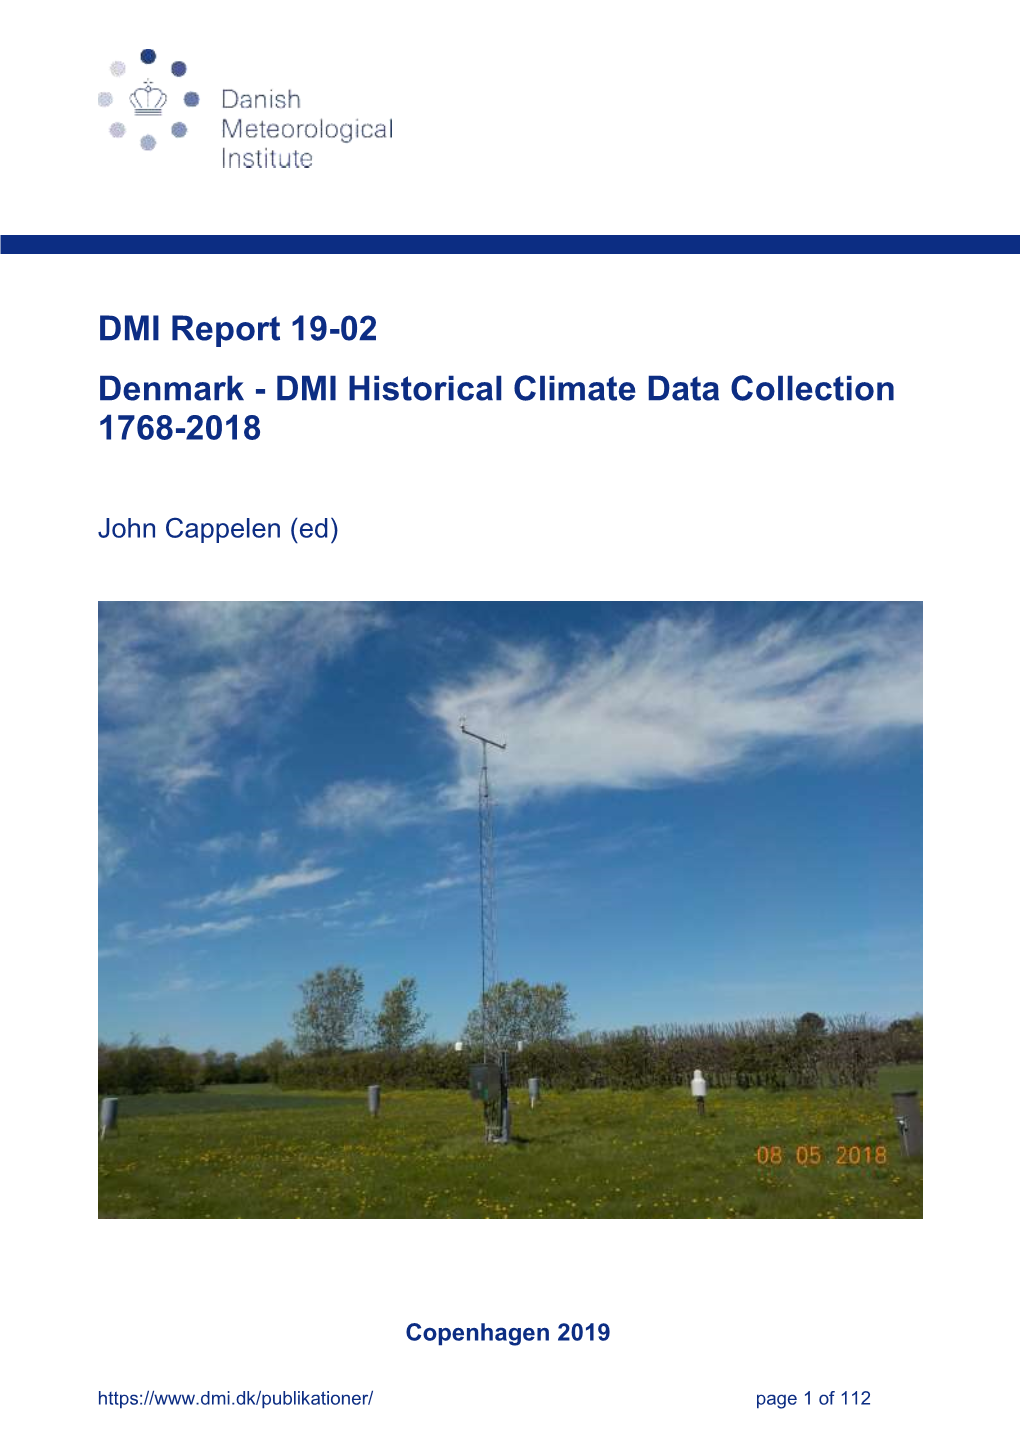 Denmark - DMI Historical Climate Data Collection 1768-2018